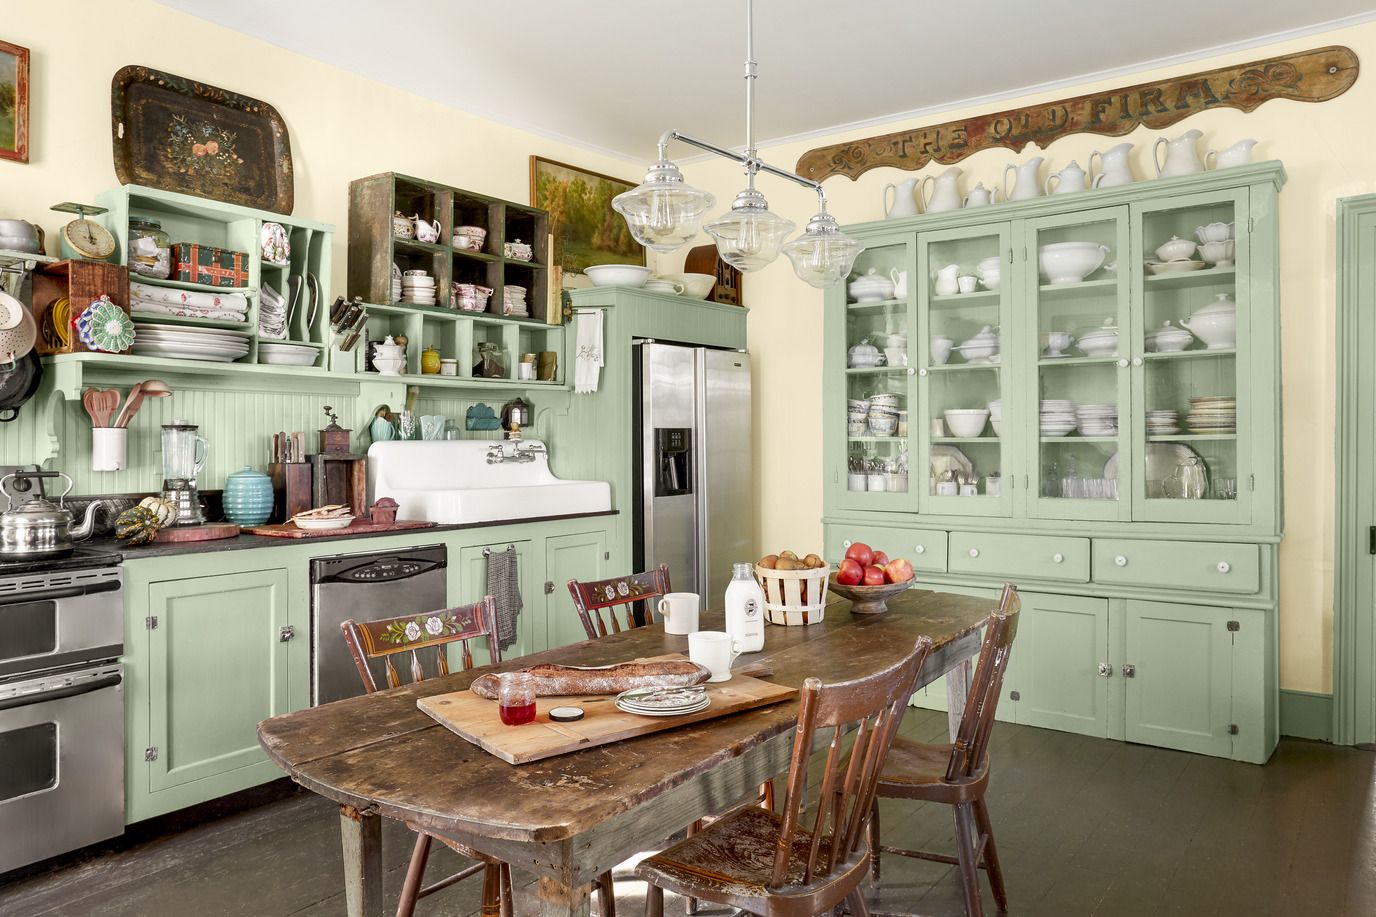 30 Farmhouse Kitchen Ideas - Rustic Farmhouse Kitchens